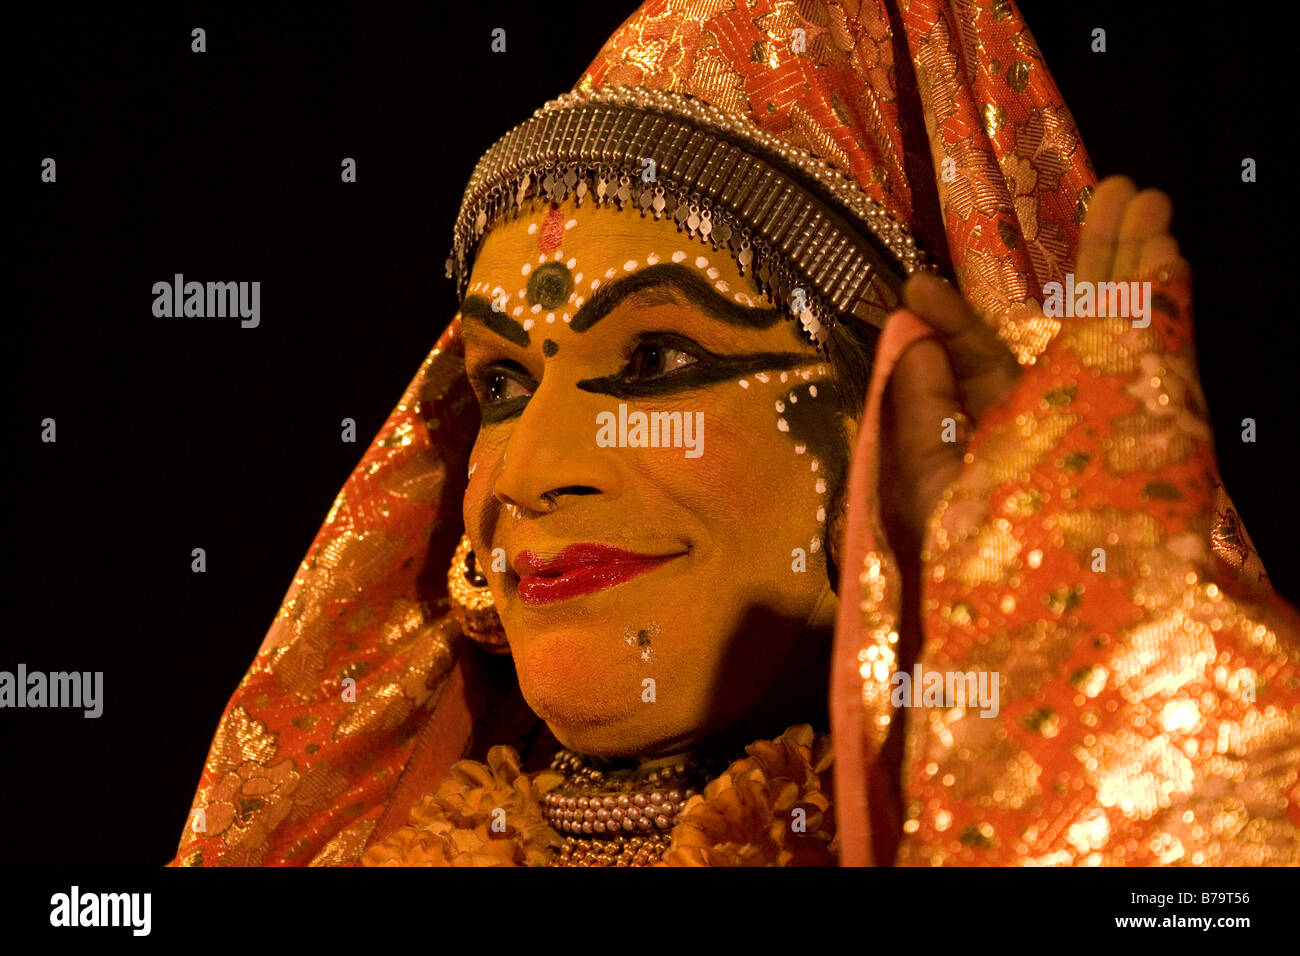 Un uomo che svolge il ruolo di un personaggio femminile in una performance del tradizionale del Kerala dance drama forma d'arte, Kathakali. Foto Stock